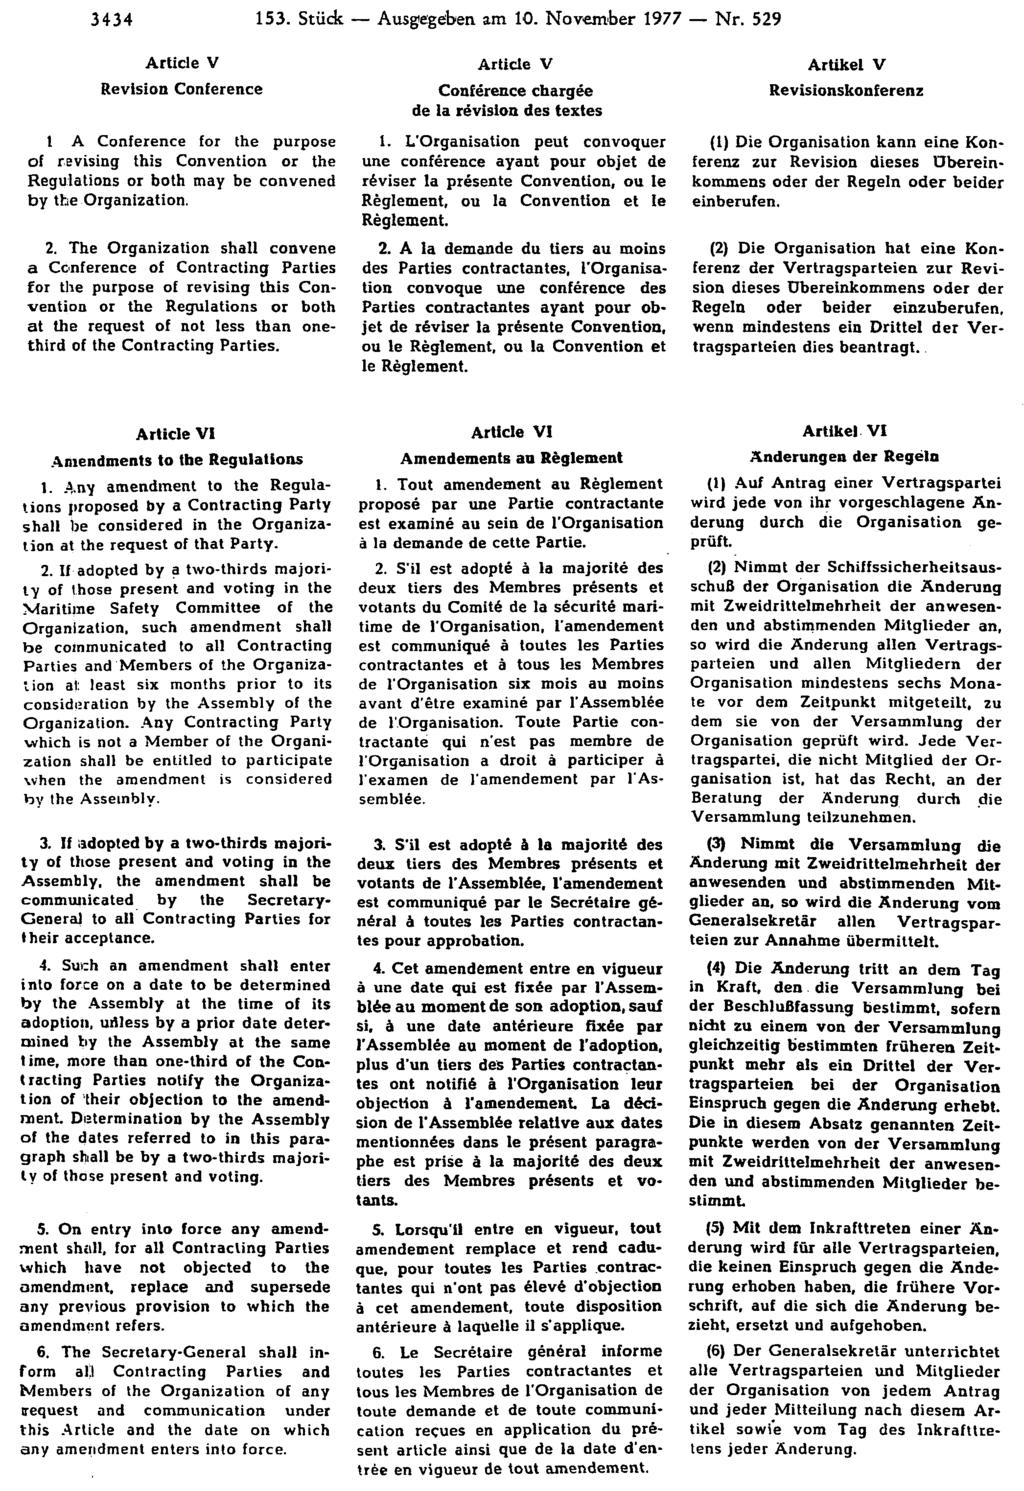 3434 153. Stück Ausgegeben am 10. November 1977 Nr. 529 Artikel V Revisionskonferenz (1) Die Organisation kann eine Konferenz zur Revision dieses Übereinkommens oder der Regeln oder beider einberufen.